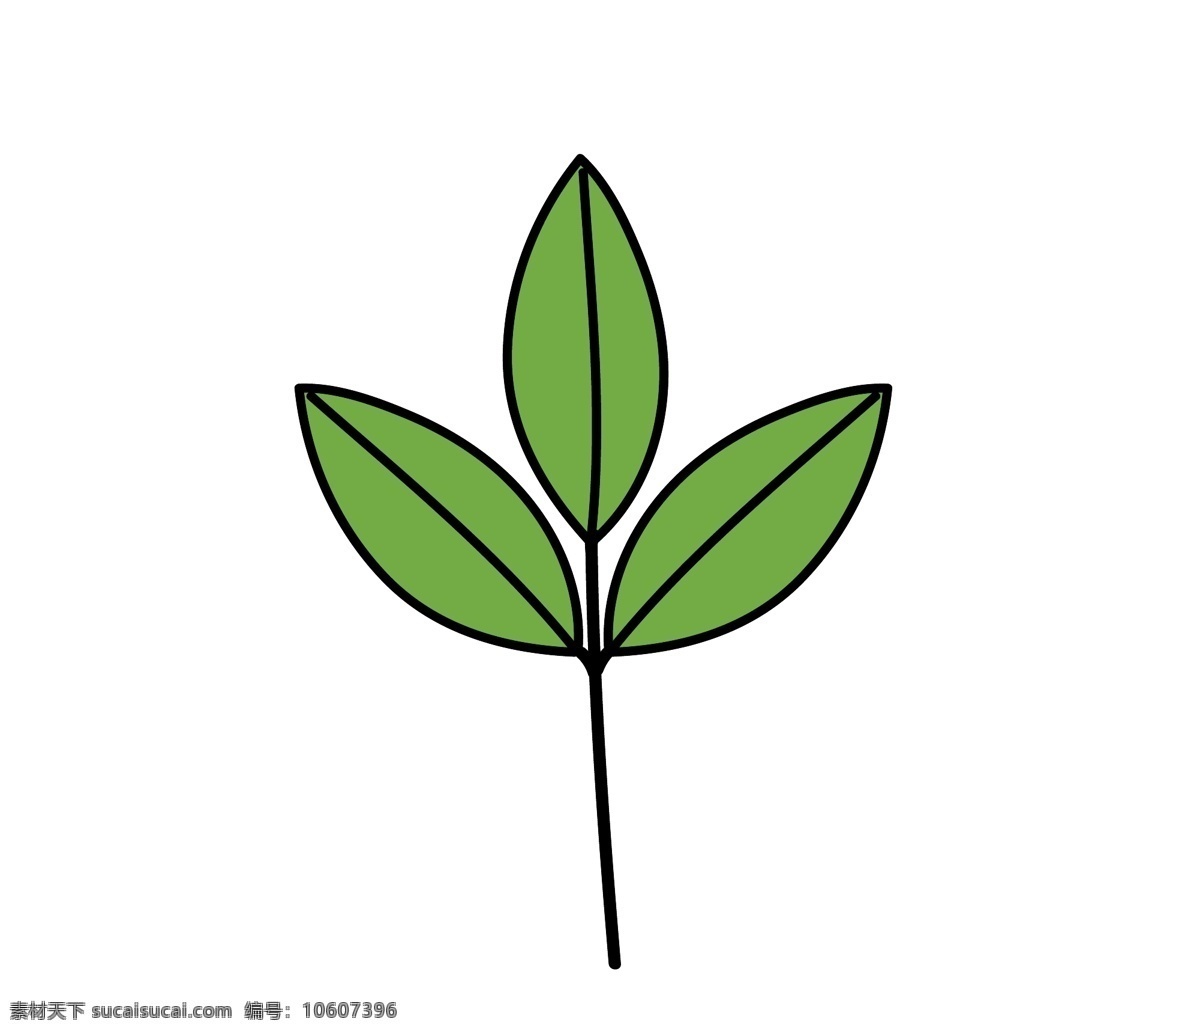 三个叶子 叶子 树叶 花叶 草 手绘 插画 矢量图 装饰元素 一支树叶 枝叶 竹叶 生物世界 树木树叶